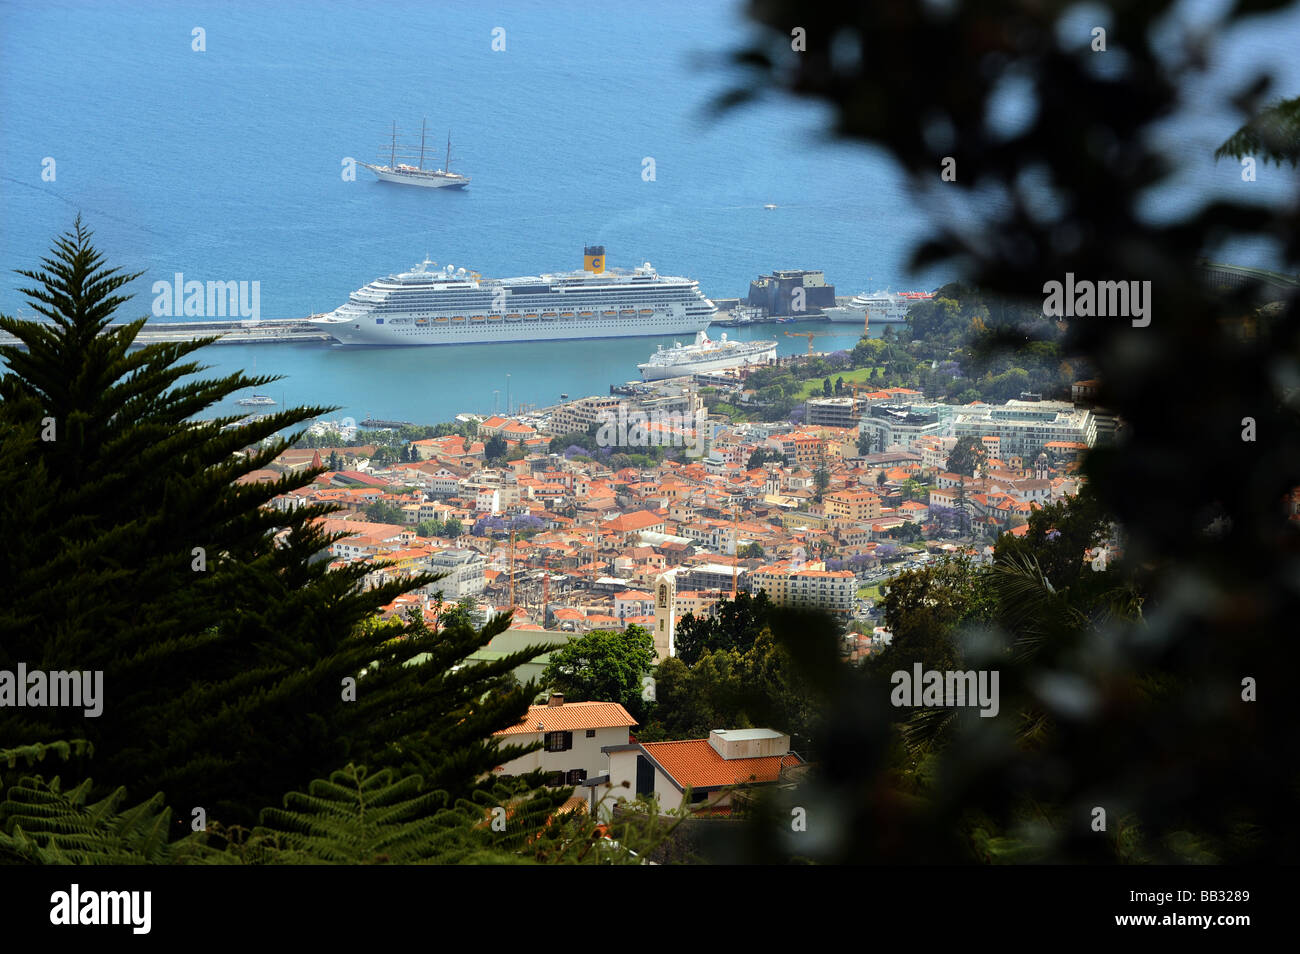 Vista de la de Funchal, la capital y principal puerto de Madeira. Foto de stock